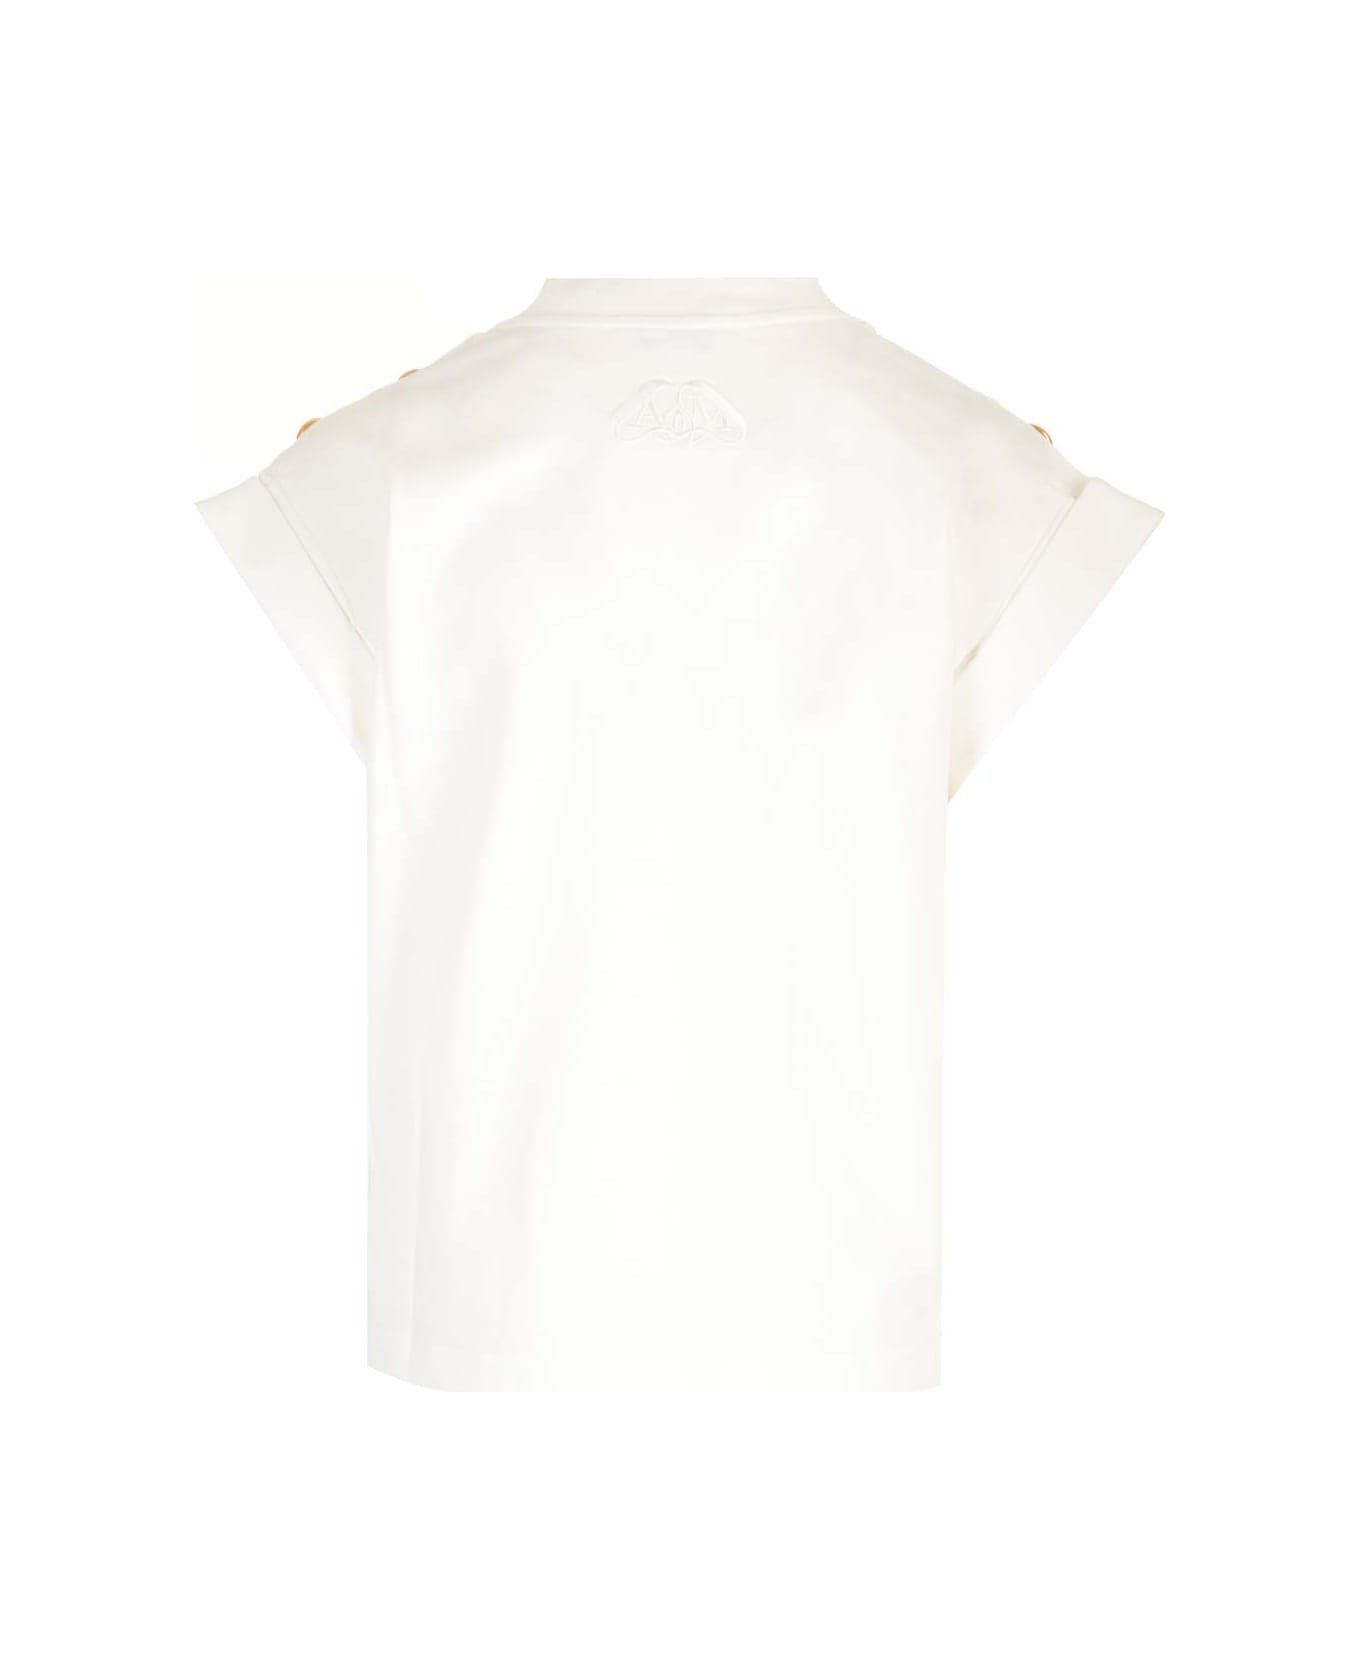 Alexander McQueen Seal Button T-shirt - White